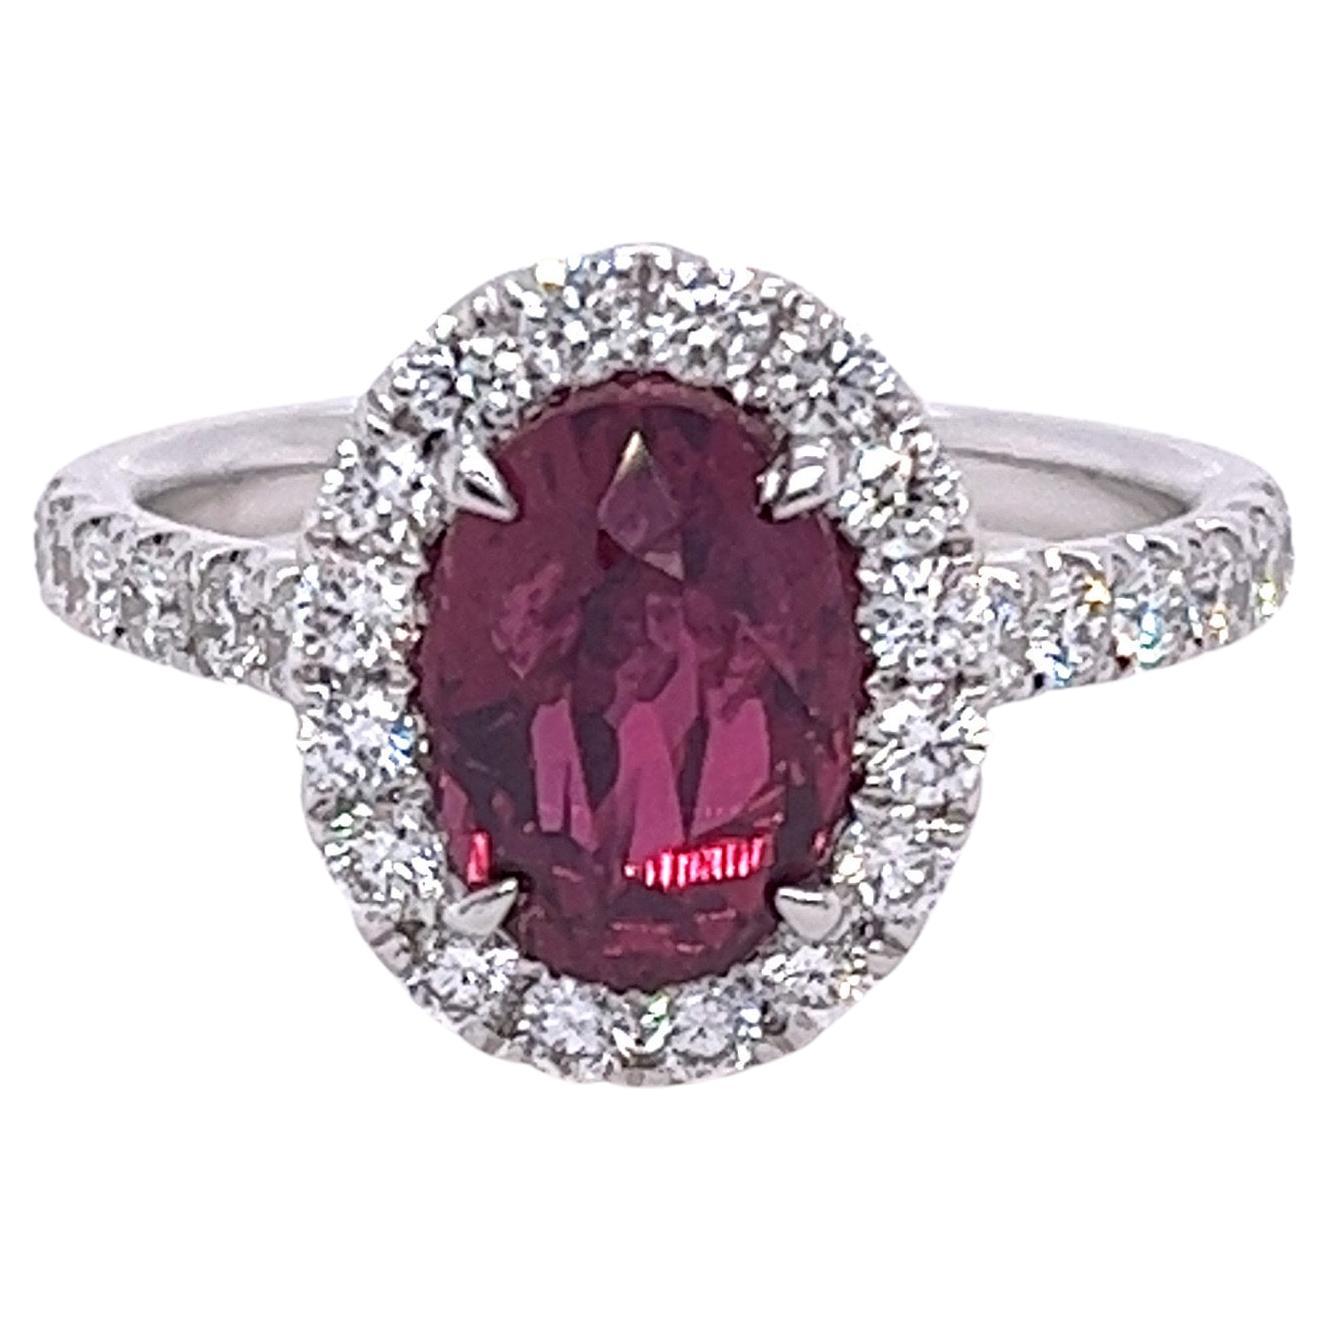 GIA Certified Ruby & Diamond Halo Ring in 18 Karat White Gold